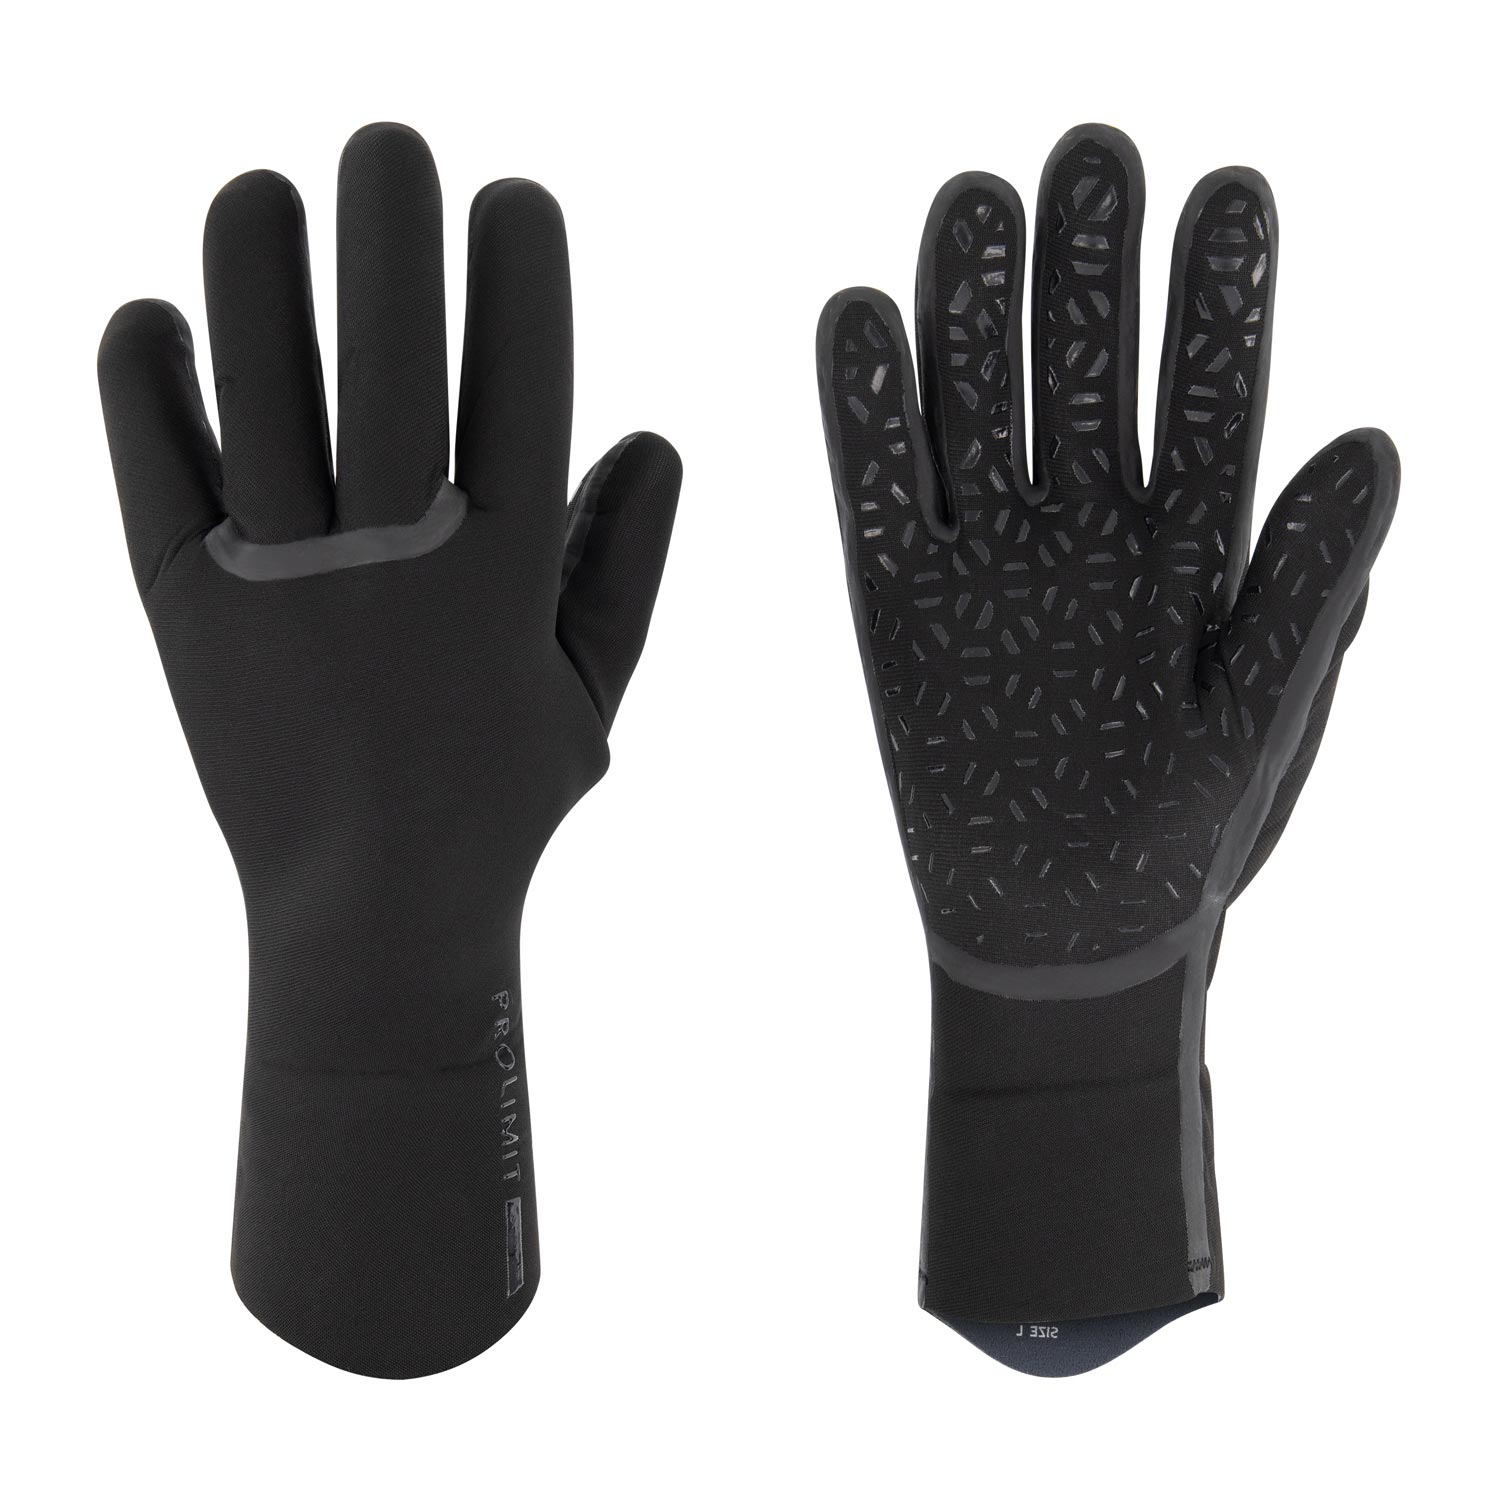 Prolimit Neopren Cold Water Glove Mitten Neo Handschuh Windsurf Kitesurf Winter 